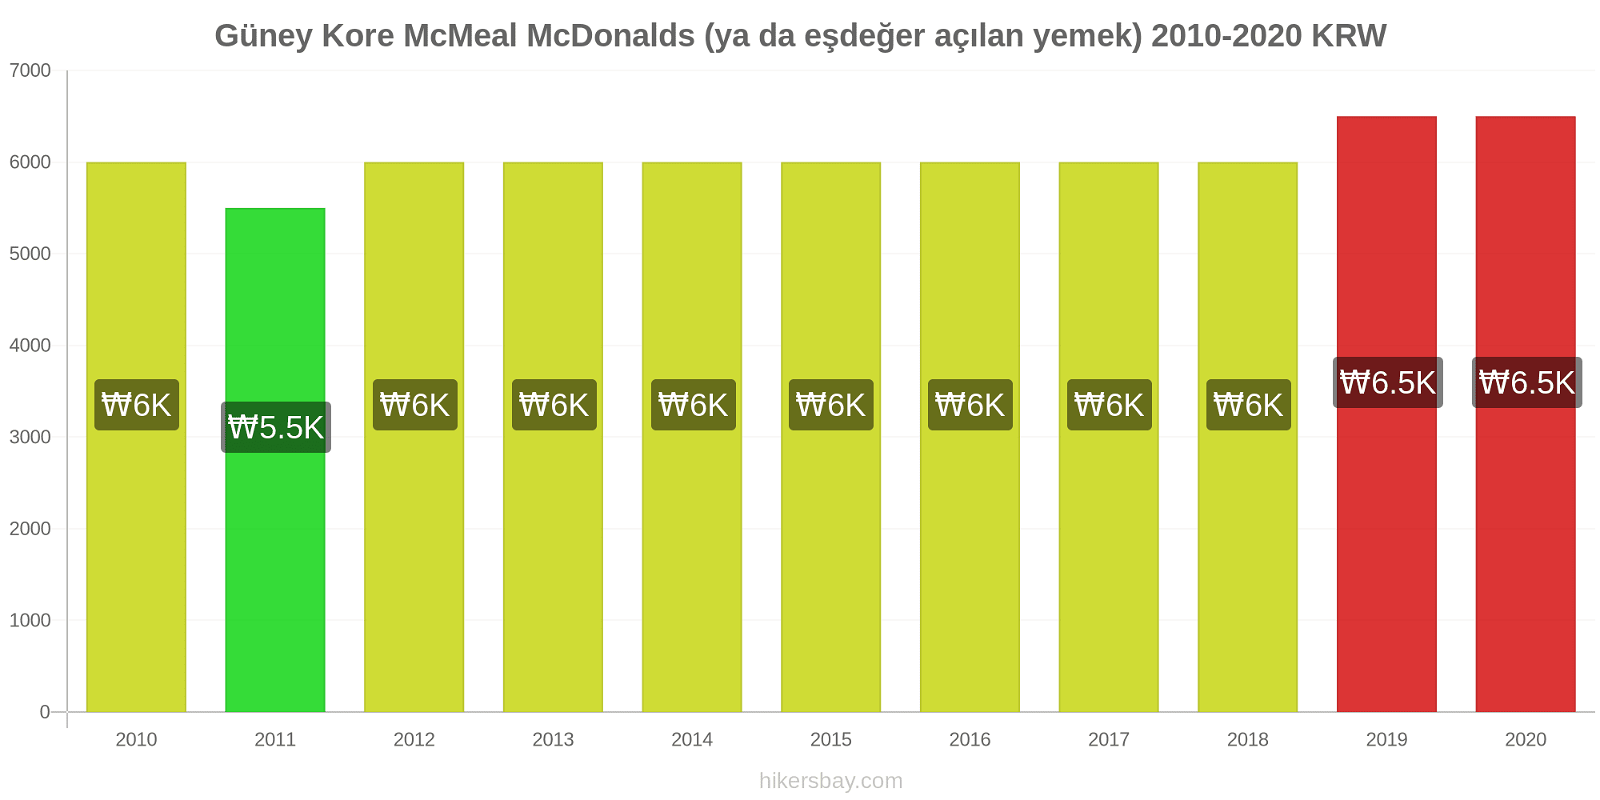 Güney Kore fiyat değişiklikleri McMeal McDonalds (ya da eşdeğer açılan yemek) hikersbay.com